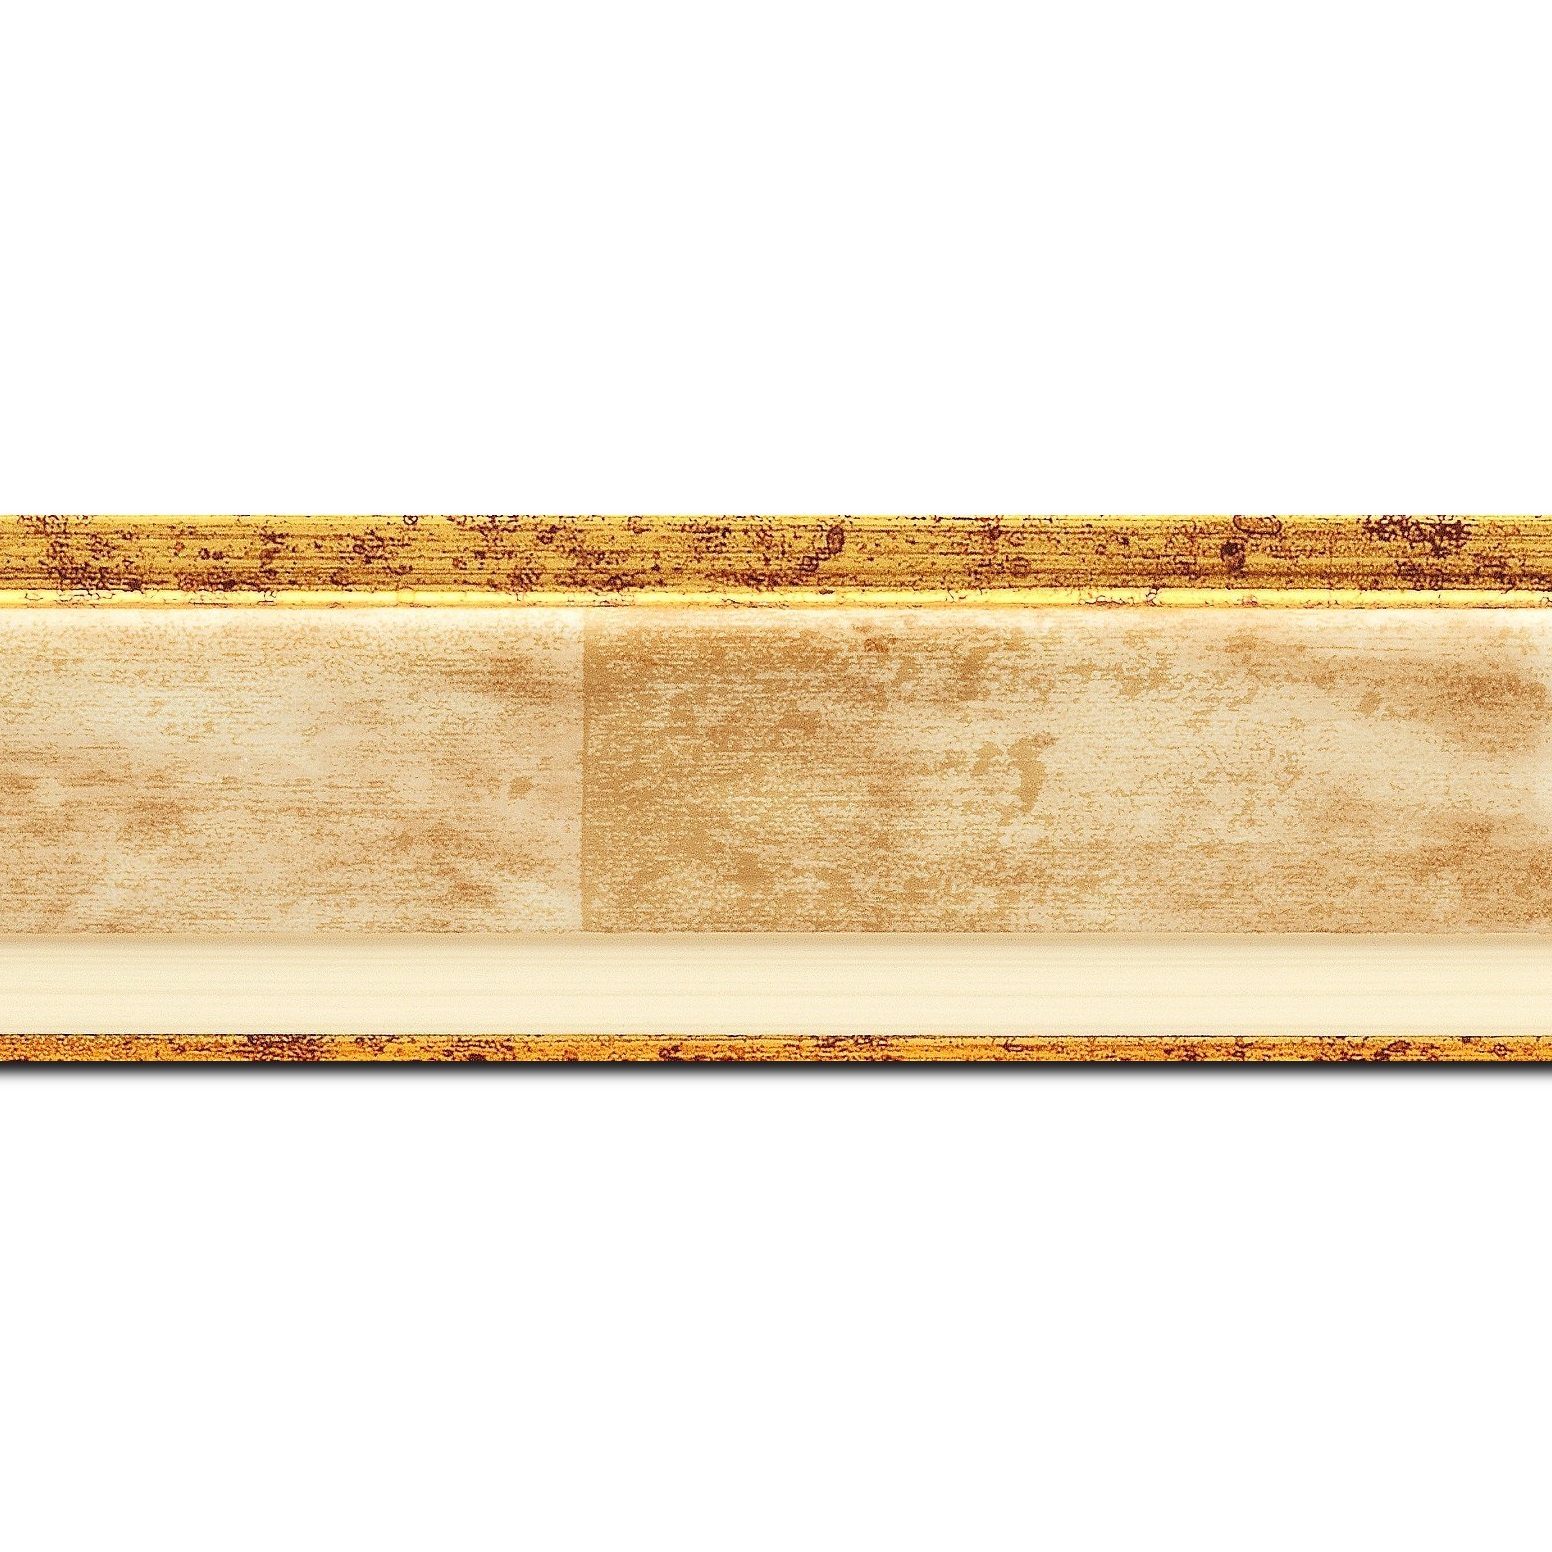 Pack par 12m, bois profil incliné largeur 5.4cm couleur crème  marie louise crème filet or intégrée(longueur baguette pouvant varier entre 2.40m et 3m selon arrivage des bois)